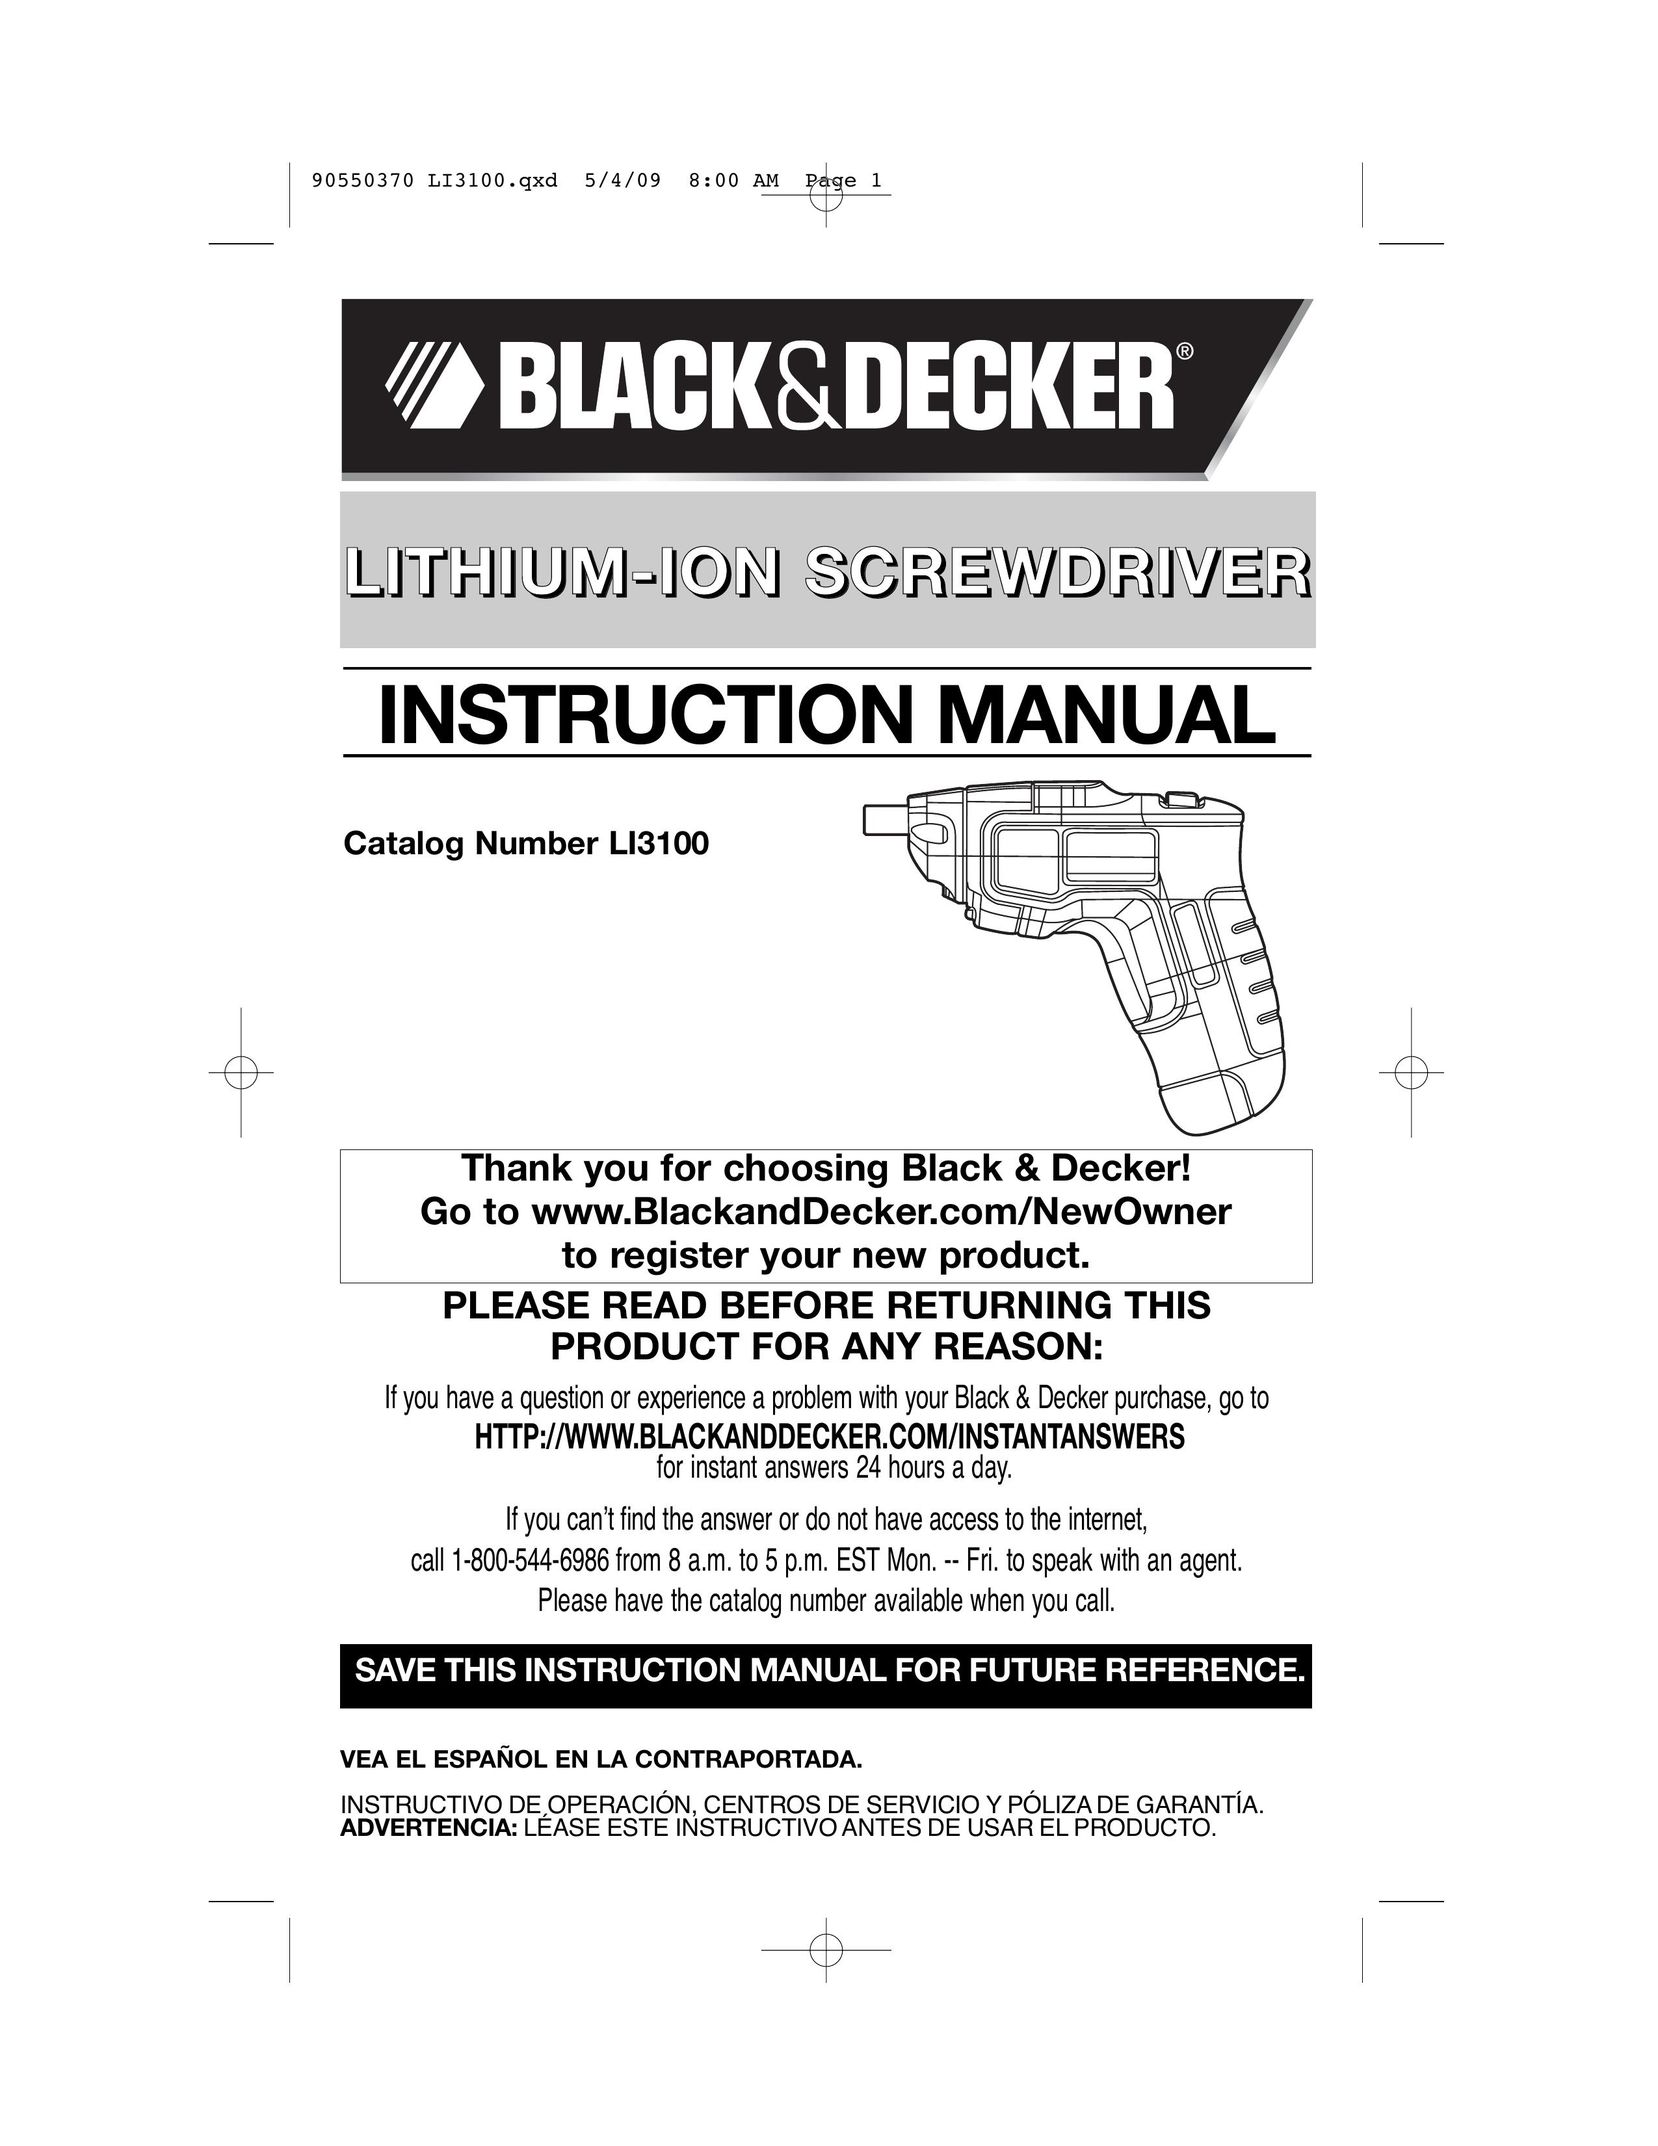 Black & Decker LI3100 Power Screwdriver User Manual